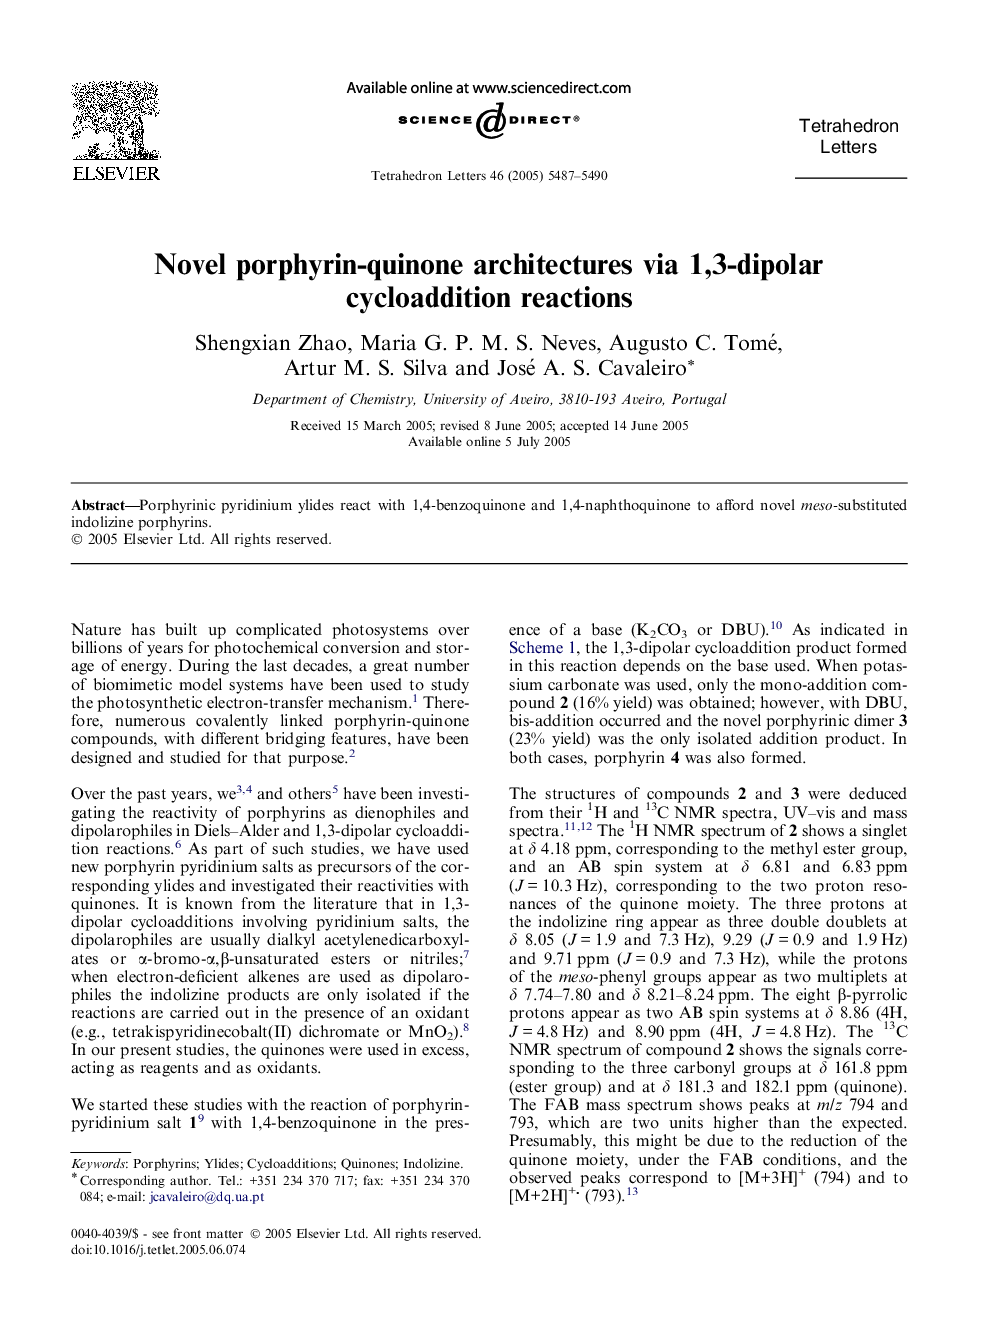 Novel porphyrin-quinone architectures via 1,3-dipolar cycloaddition reactions